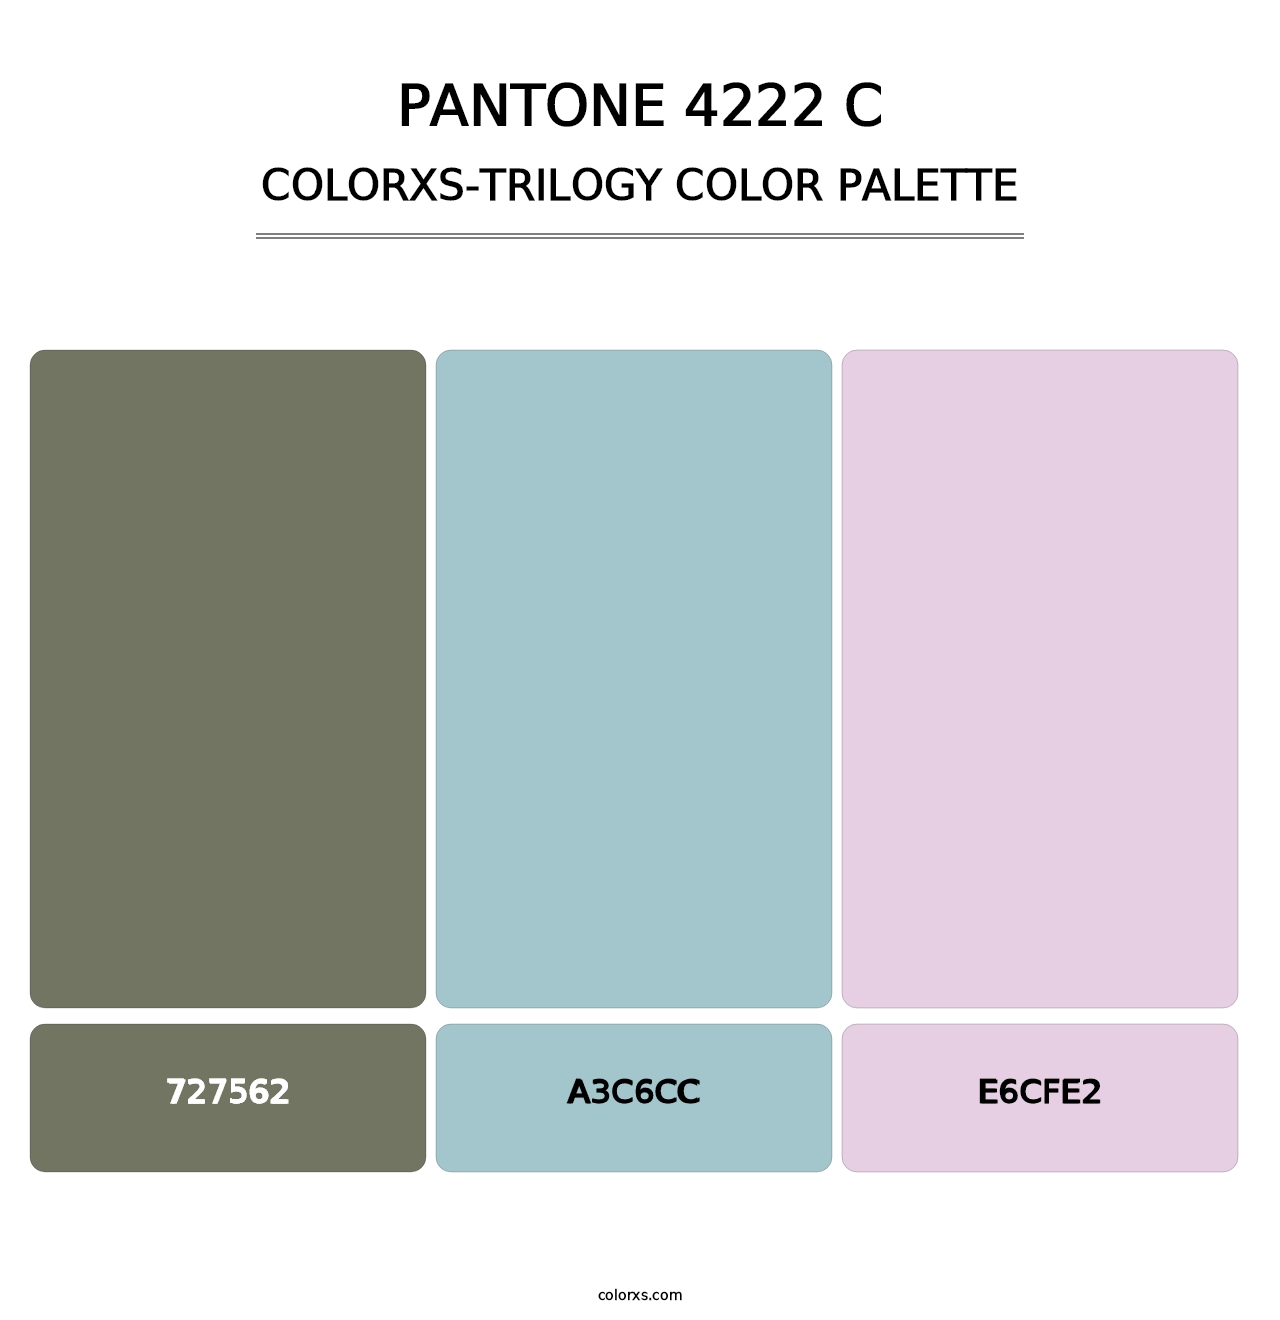 PANTONE 4222 C - Colorxs Trilogy Palette